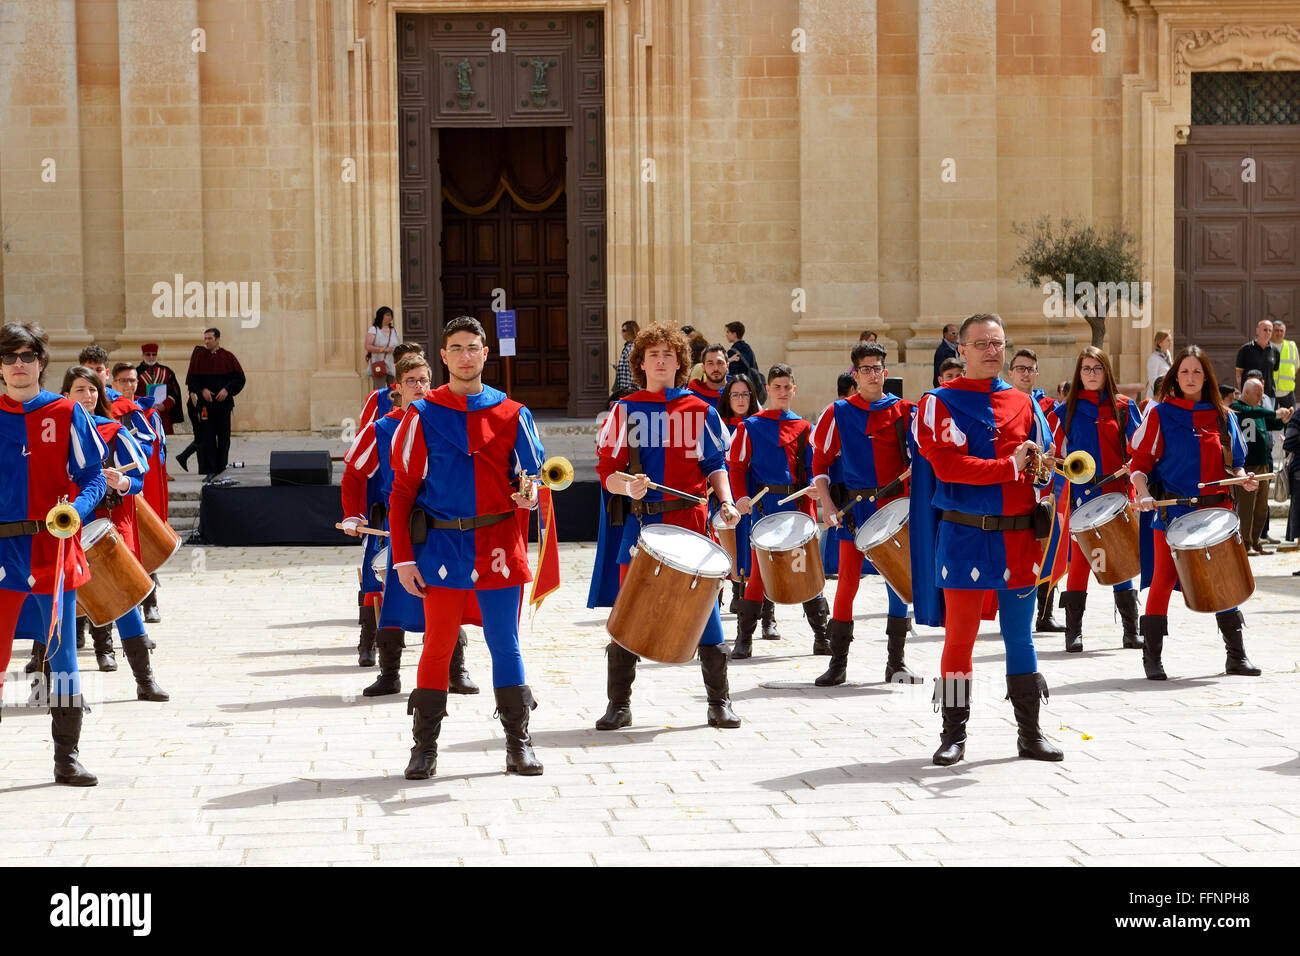 Die Mdina Mittelalterfest und Touristen, Mdina, Malta Stockfoto